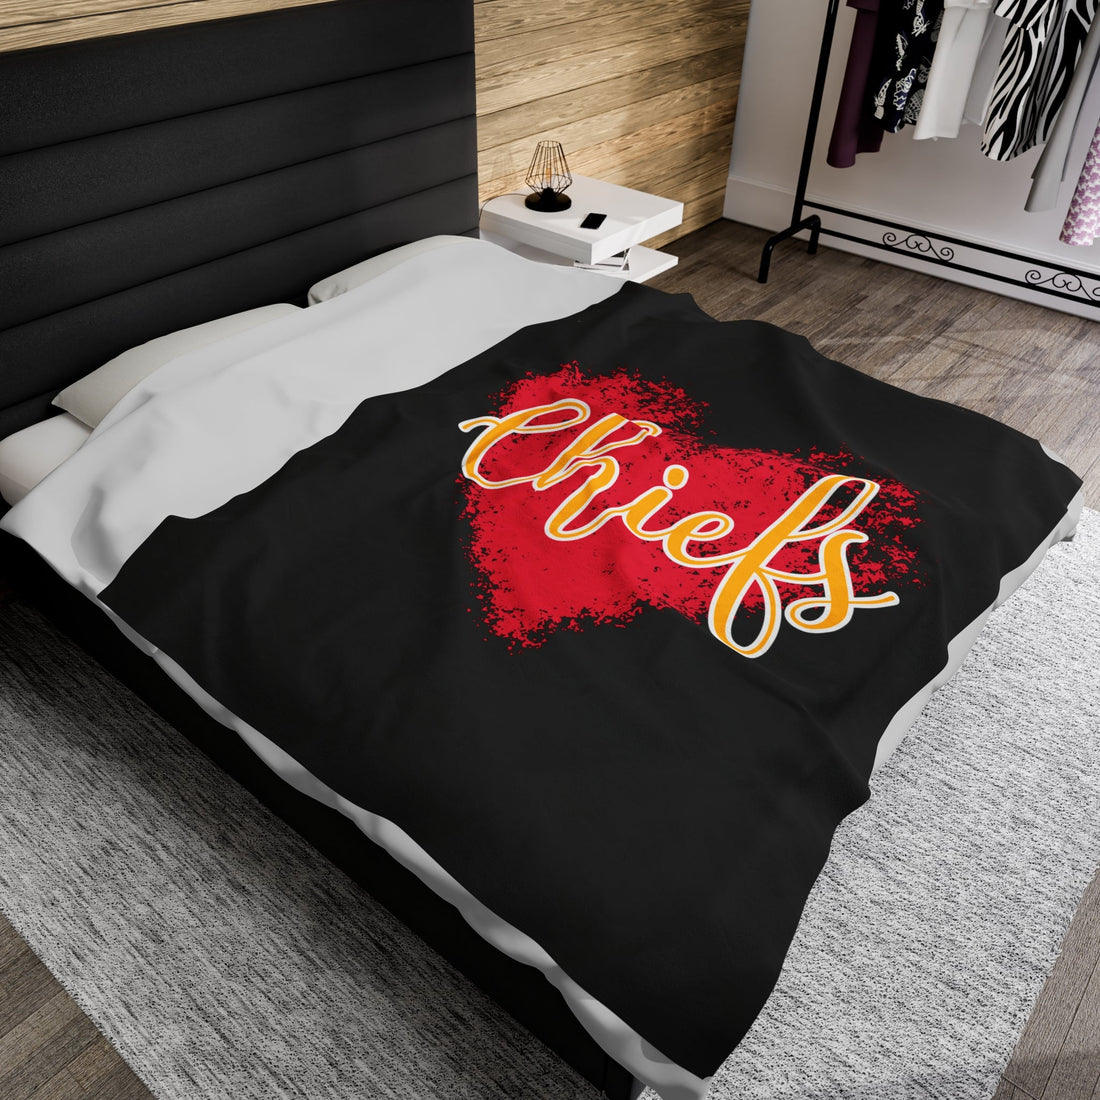 Chiefs Love Velveteen Plush Blanket - All Over Prints - Positively Sassy - Chiefs Love Velveteen Plush Blanket